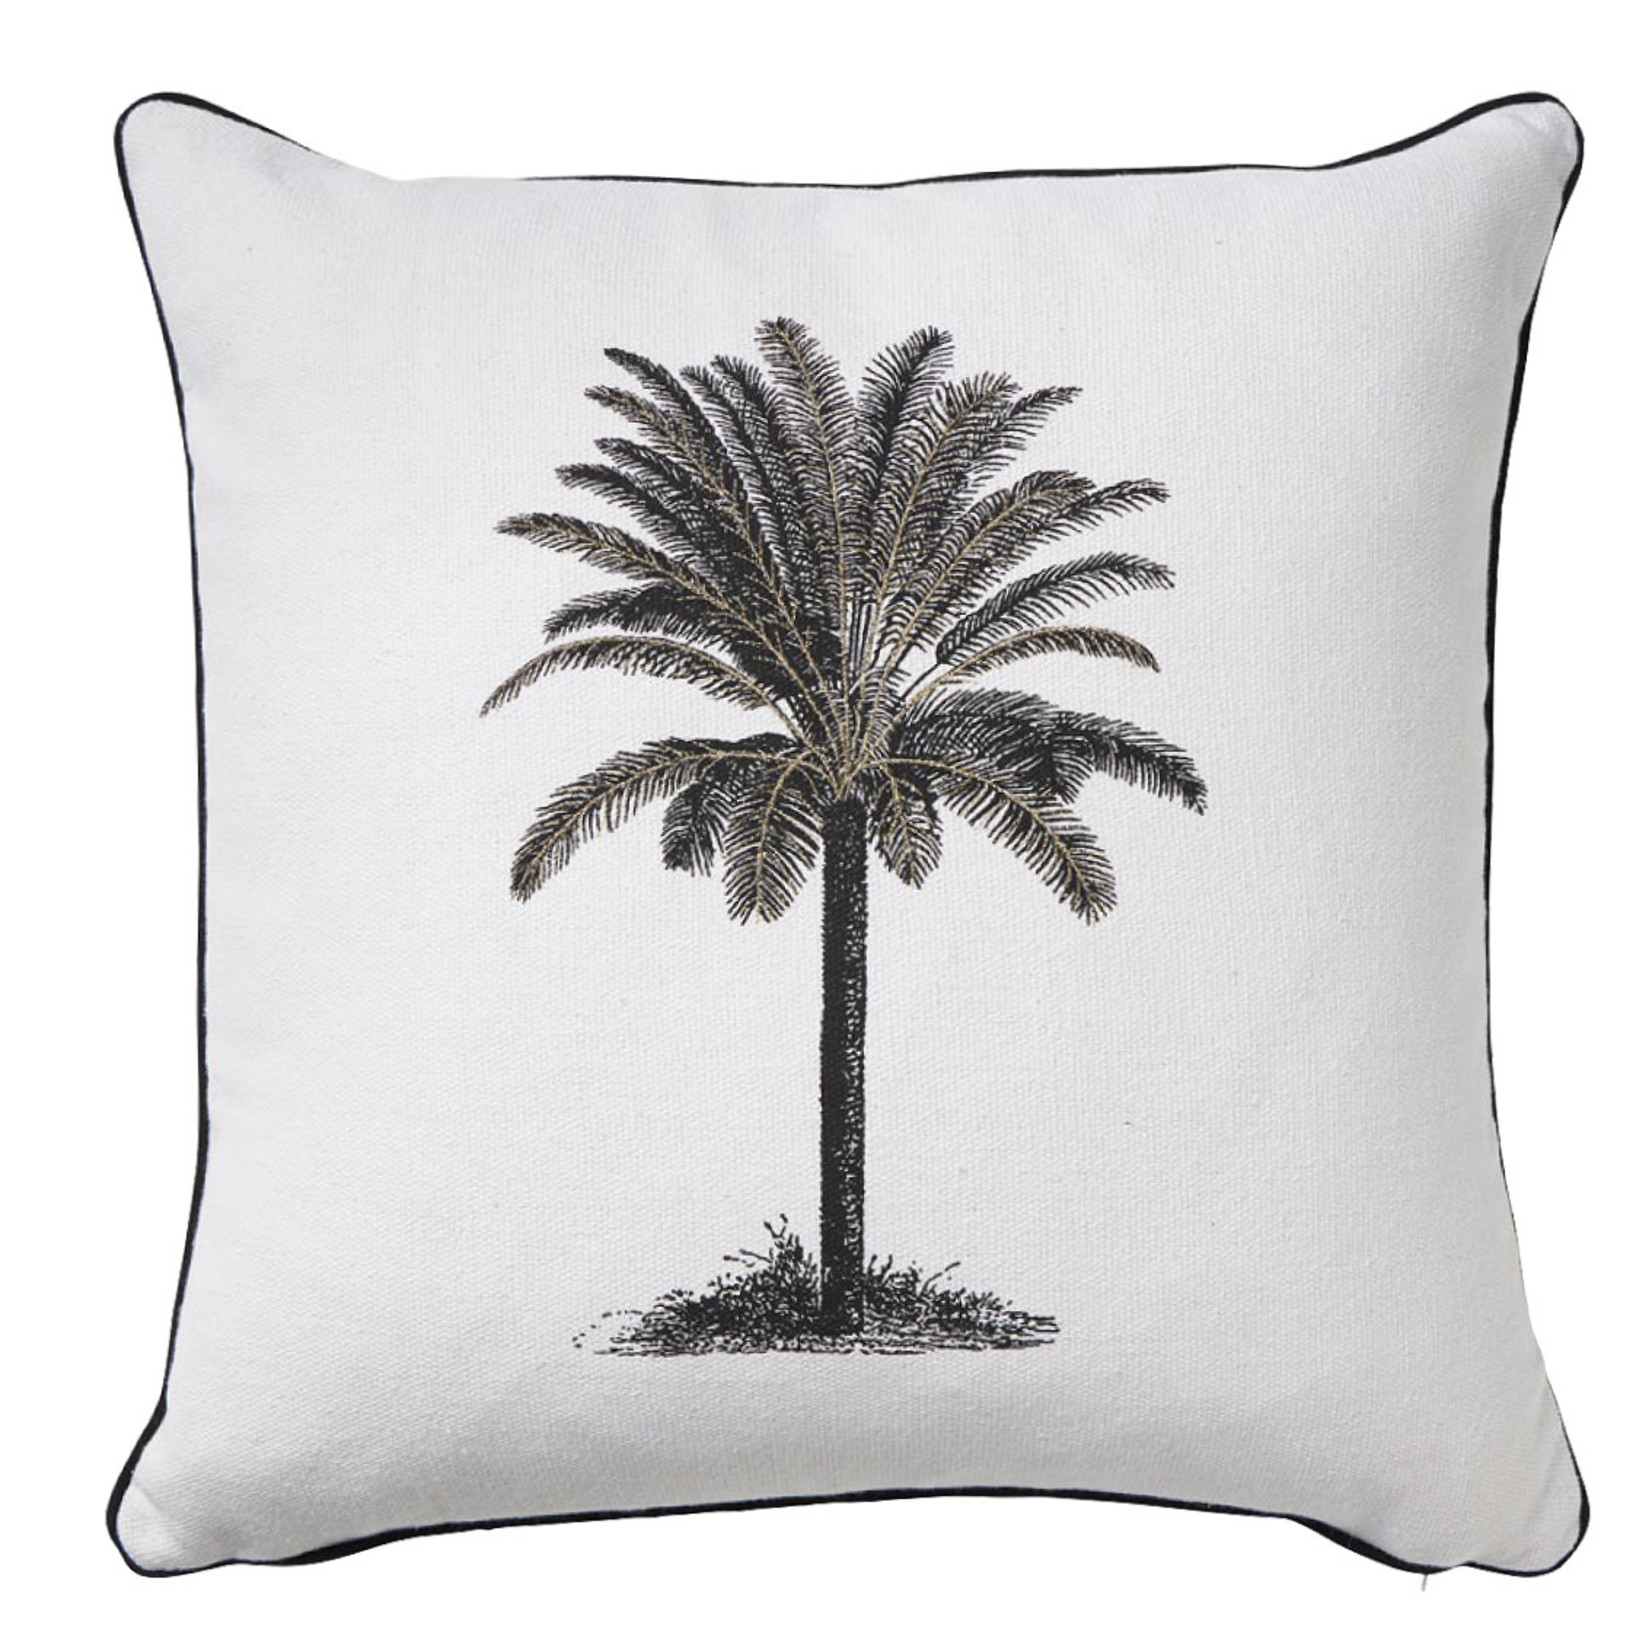 Kissen Cayman Palm cotton schwarz, 50x50cm, inkl. Innenkissen